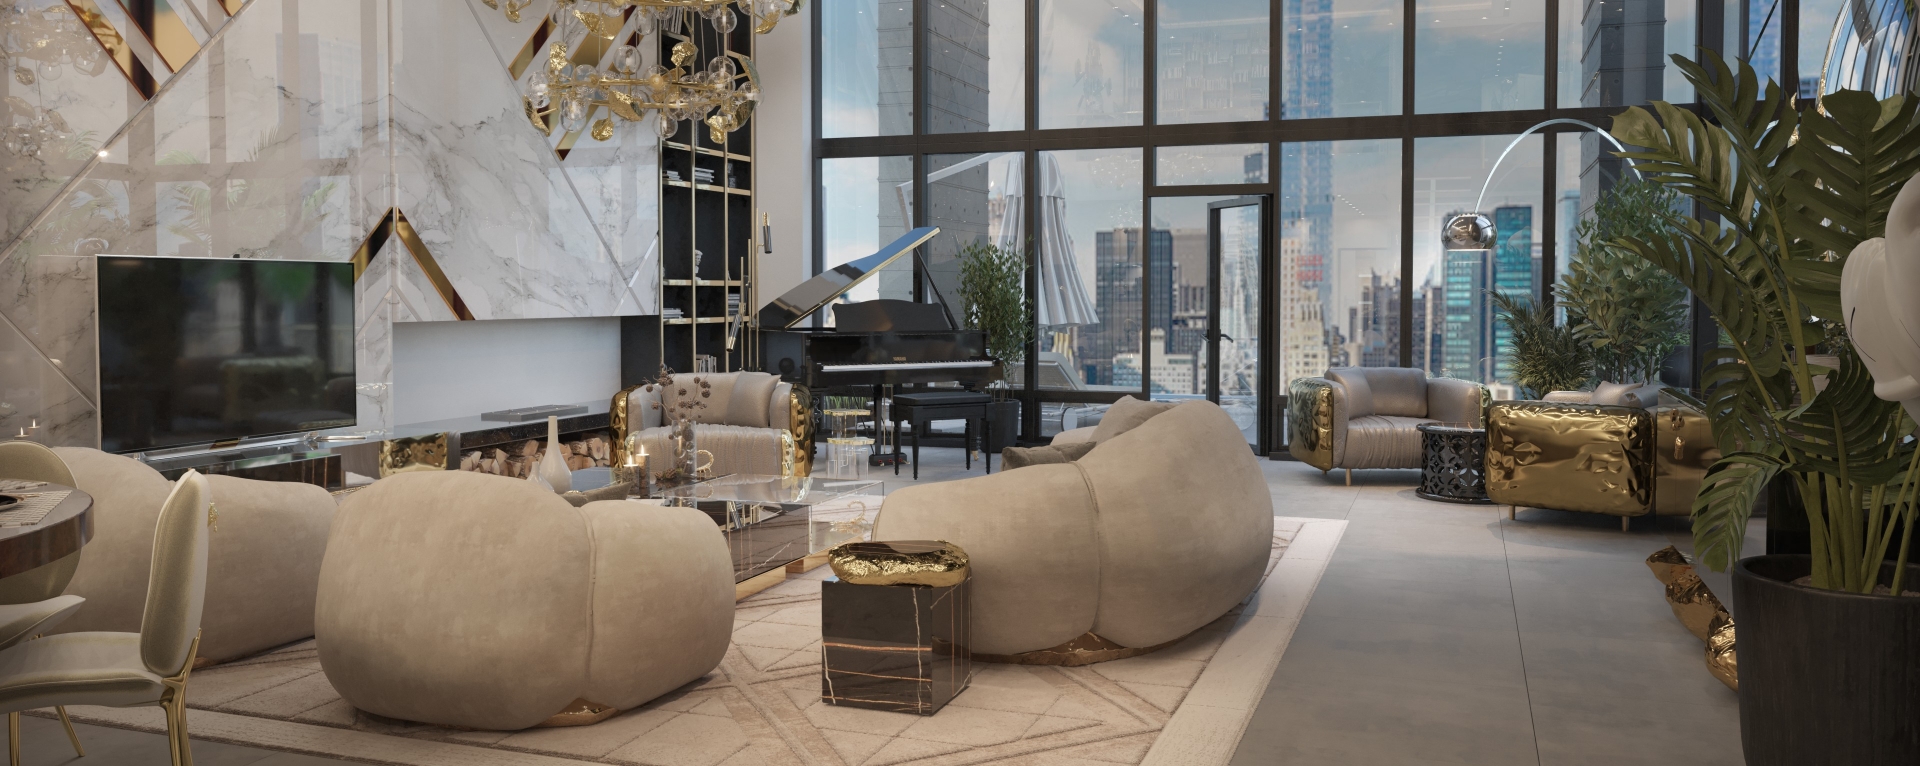 Classy Luxury Living Room